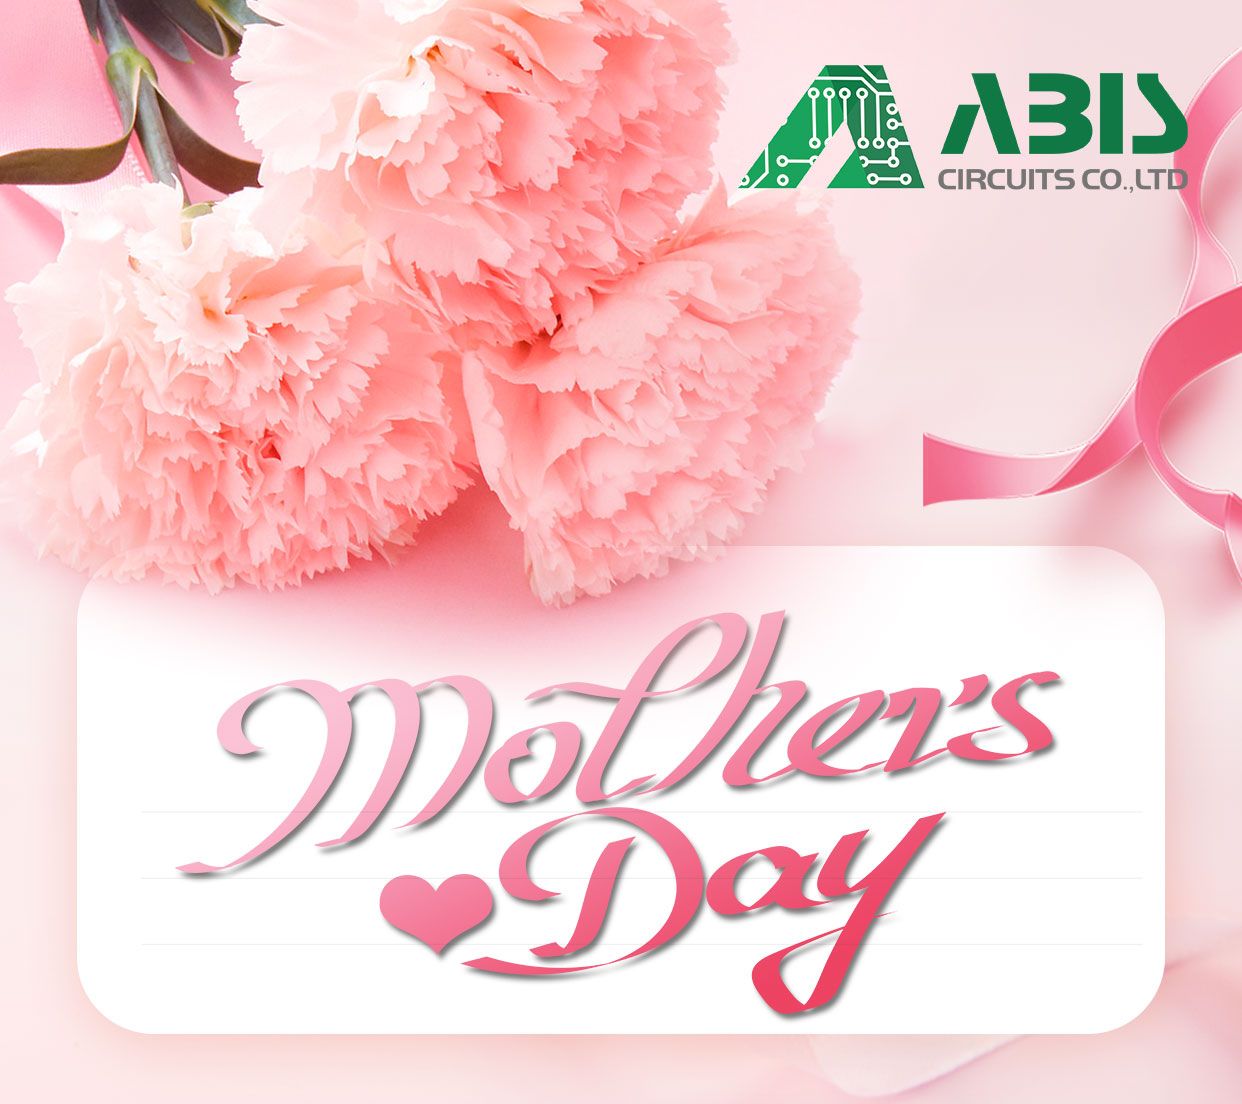 Fijne Moederdag aan alle geweldige moeders!